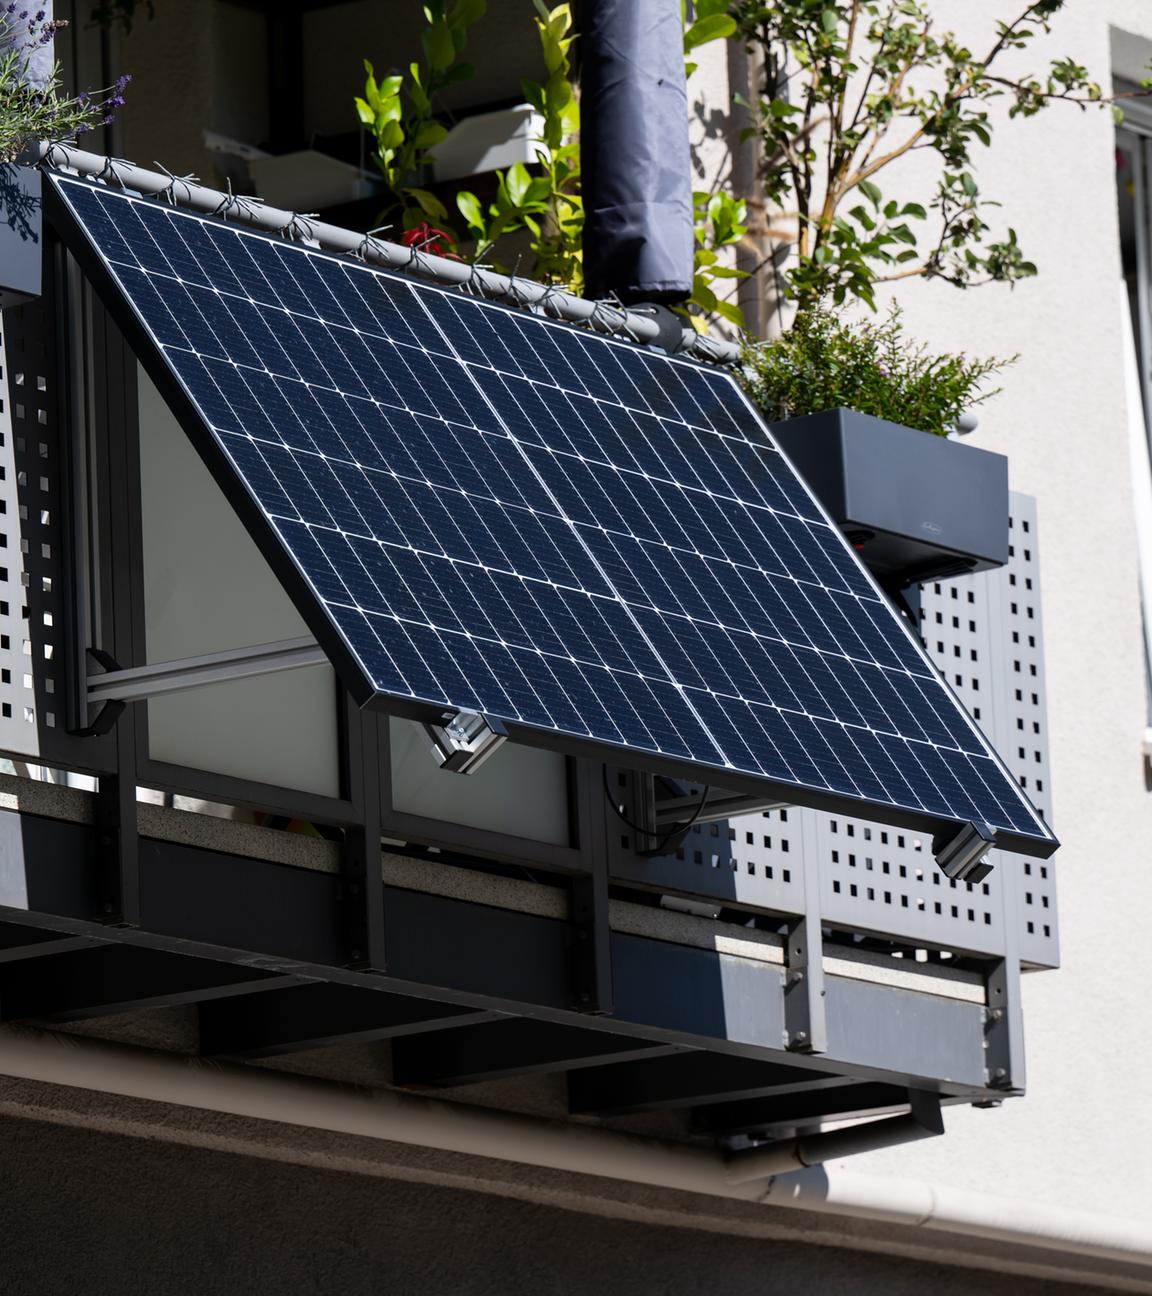 Bayern, München: Stecker-Solaranlagen für den Balkon können die eigene Stromrechnung senken.